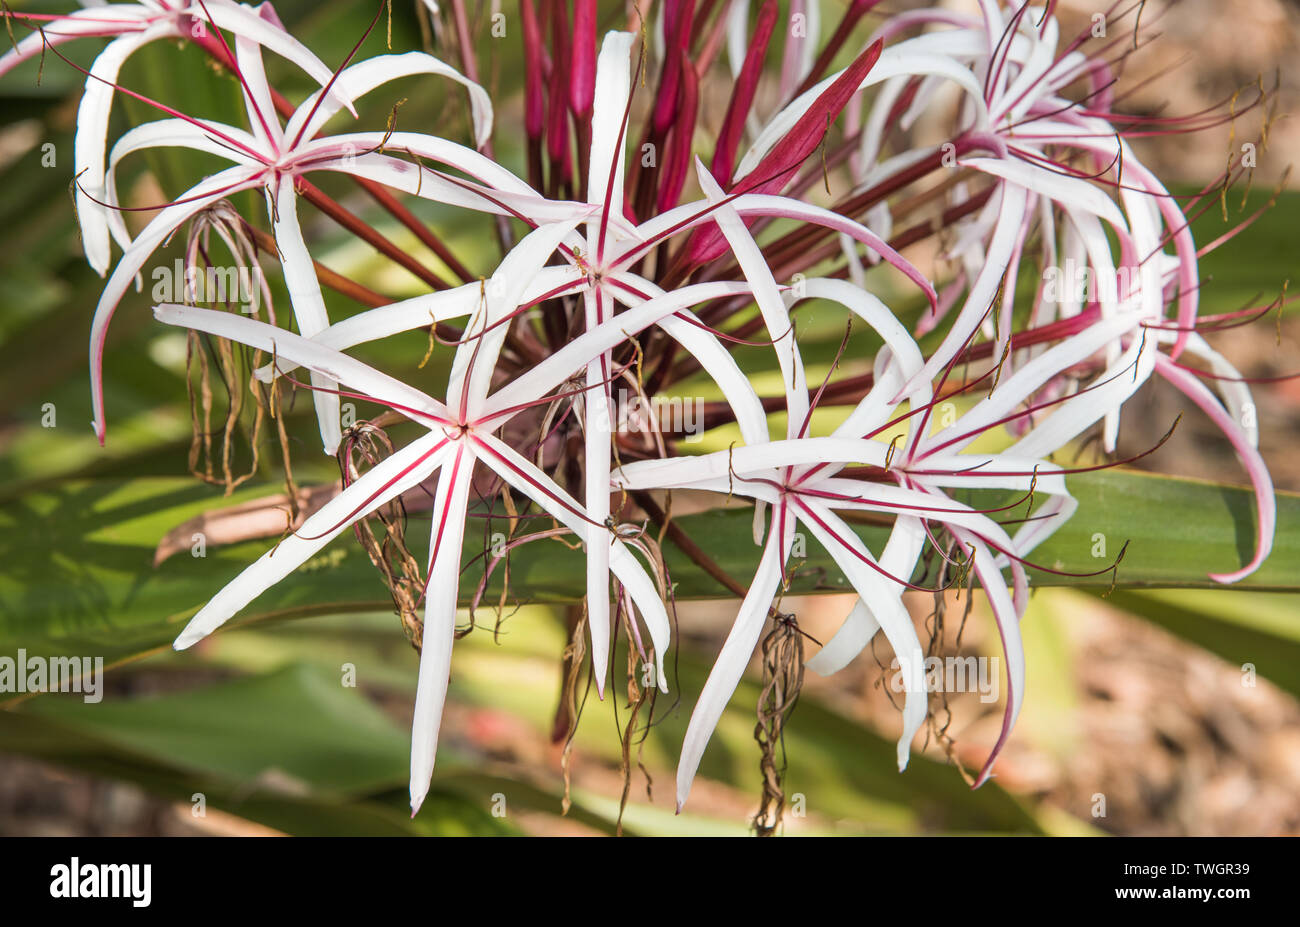 Crinum lilies growing in outdoor, tropical garden in Darwin, Australia Stock Photo